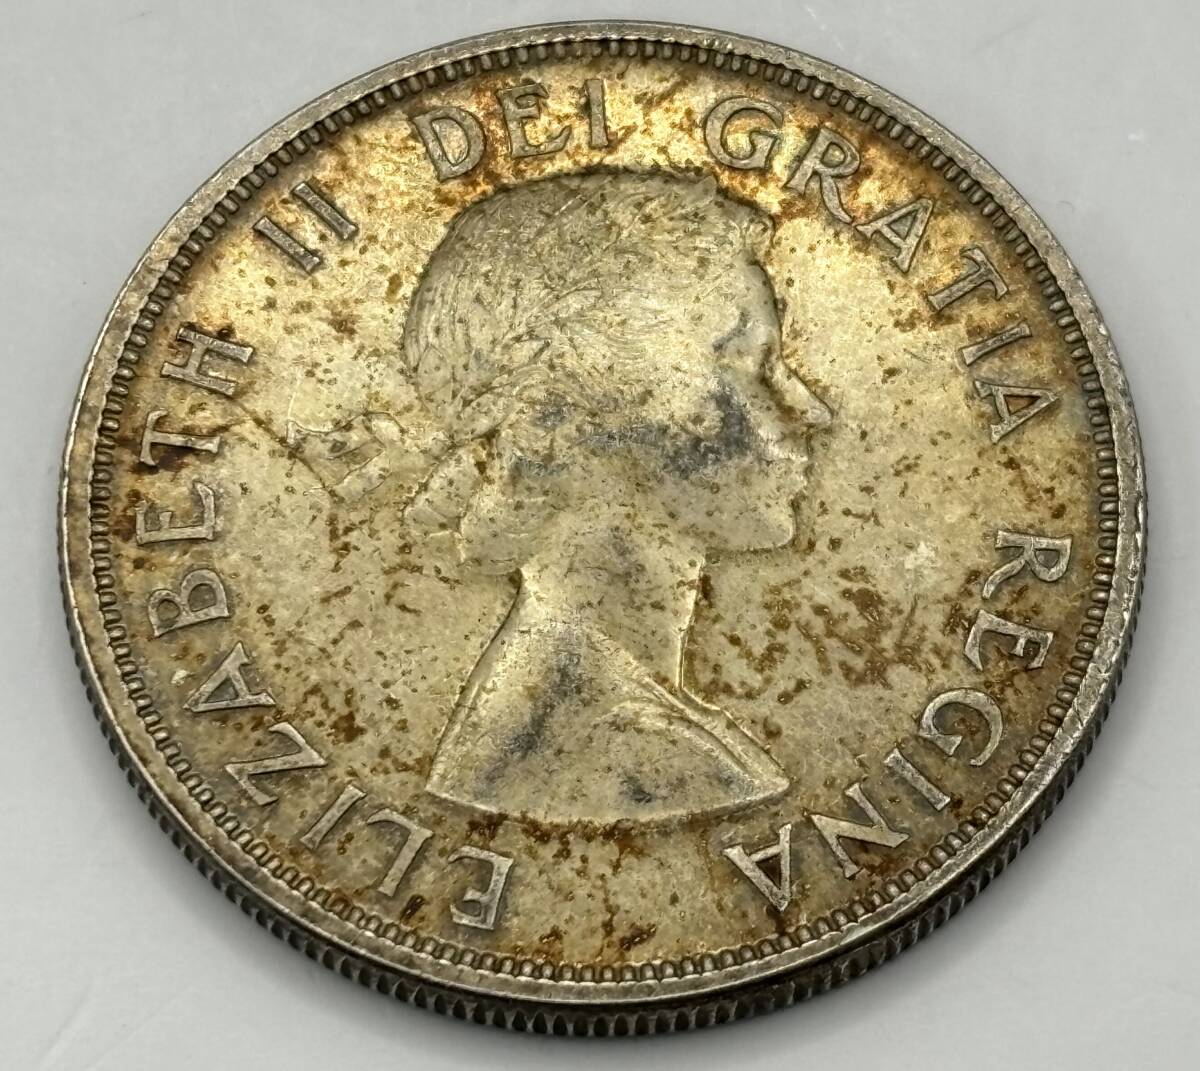 カナダ 1ドル銀貨 ブリティッシュコロンビア100年 1858-1958年★359管理番号_画像1